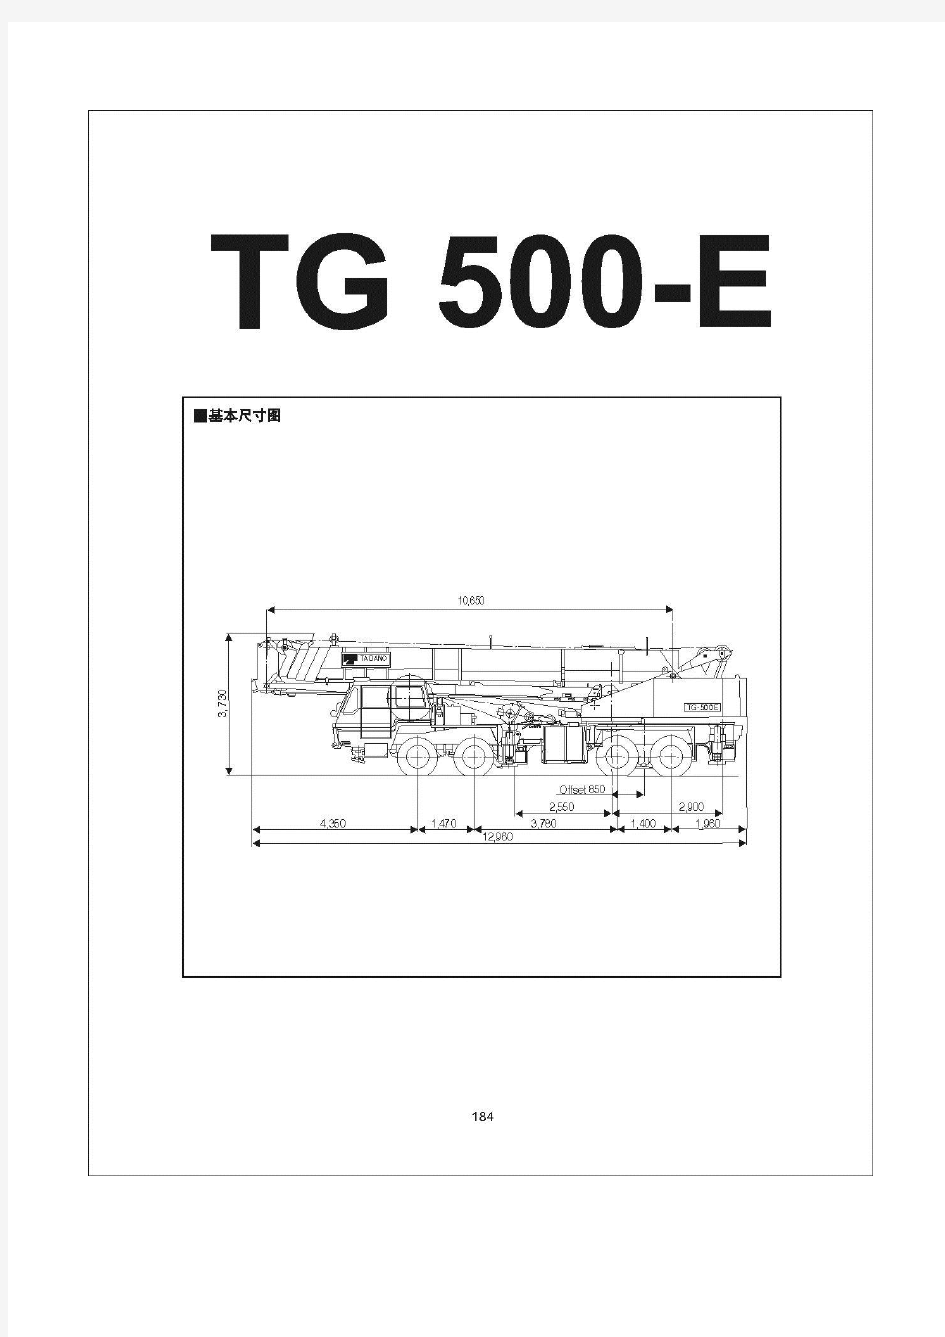 TG-500E全路面汽车吊车参数表